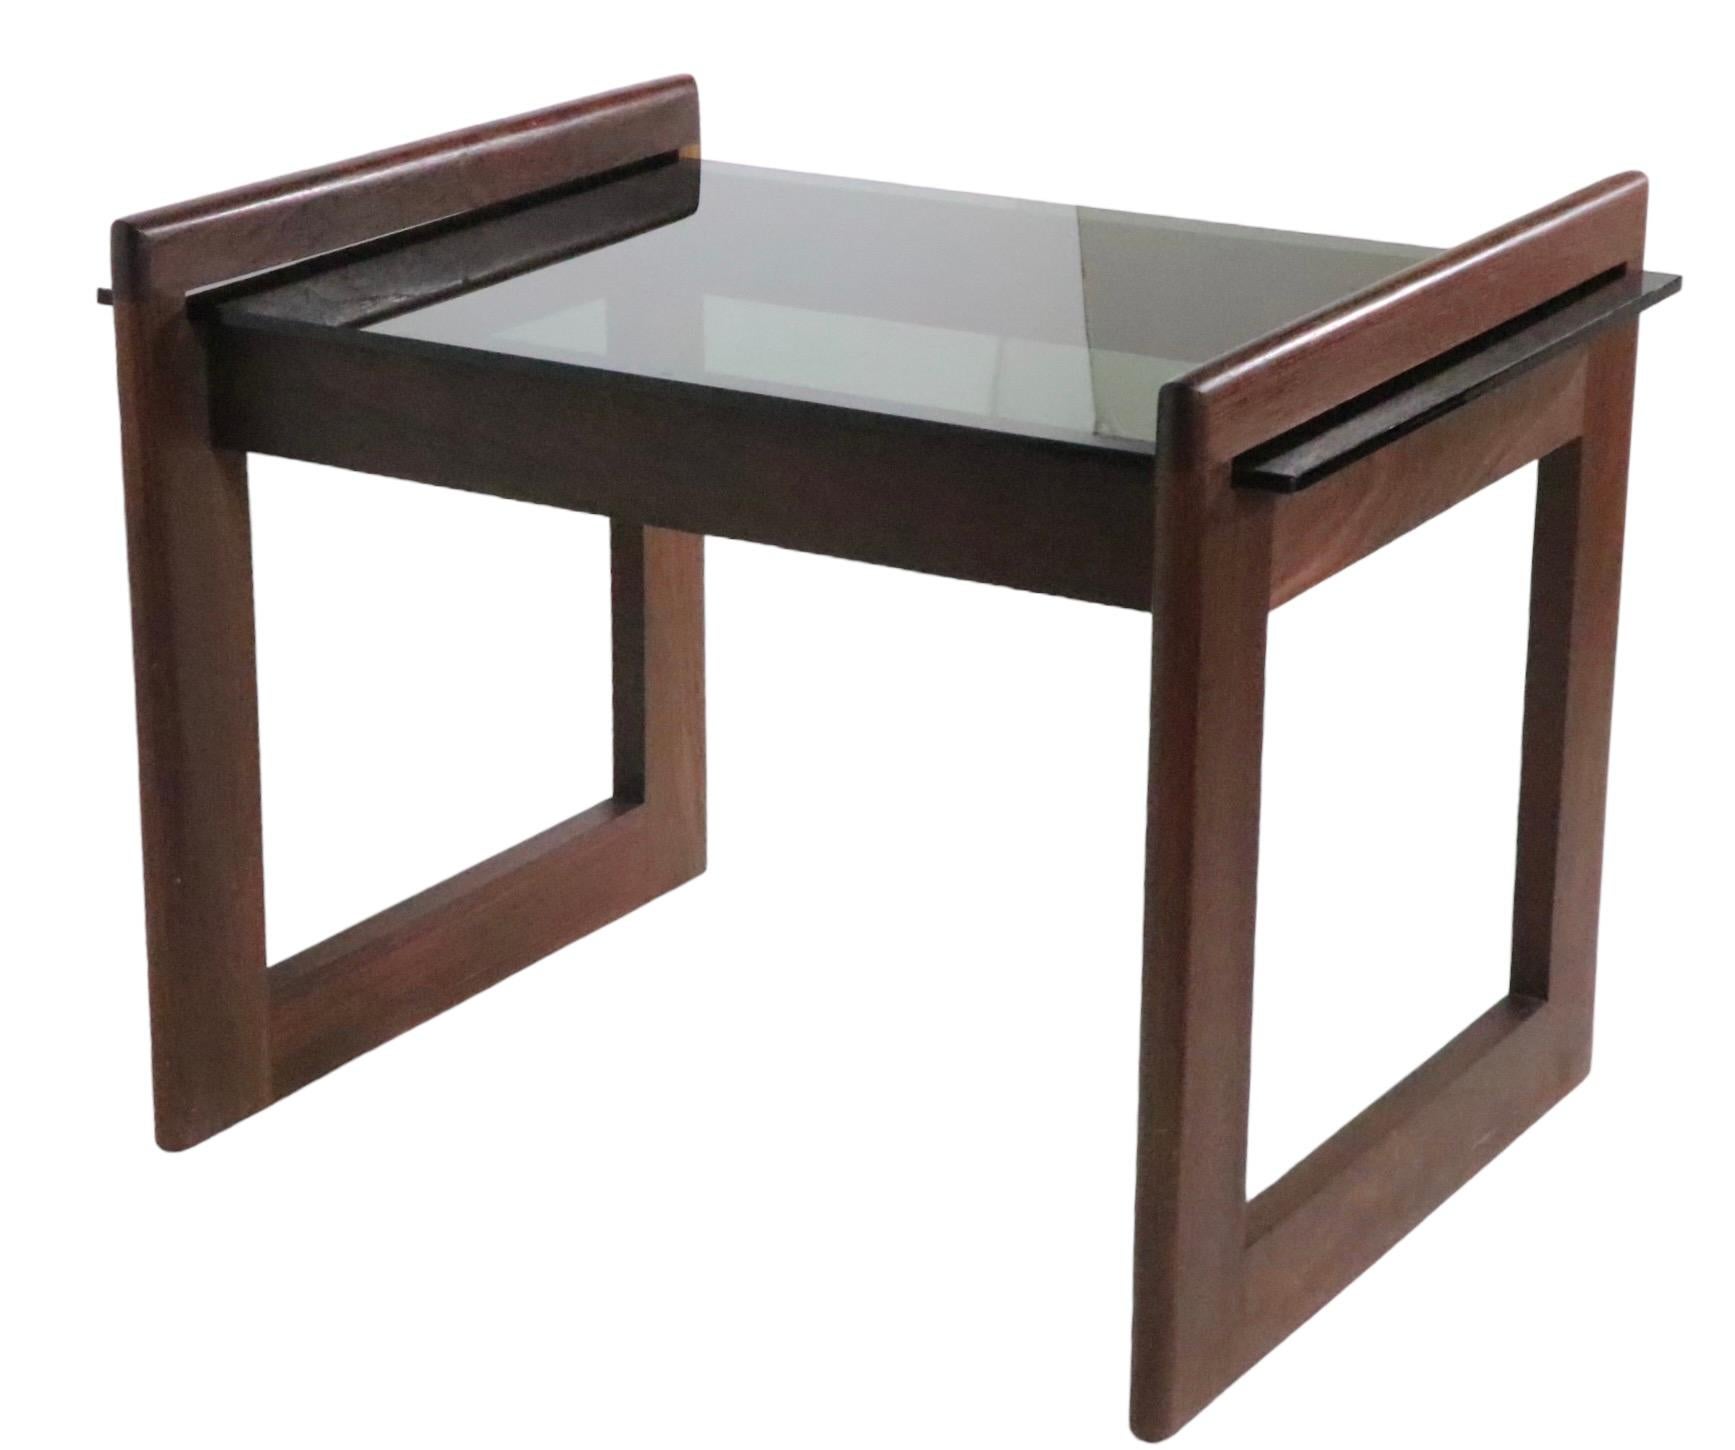 Schicker architektonischer End- oder Beistelltisch von Adrian Pearsall, um 1970. Der Tisch hat eine Platte aus getöntem Glas, die in den Massivholzrahmen passt. Sehr fetziges Design, hervorragender Originalzustand, sauber und einsatzbereit. 
 Bitte